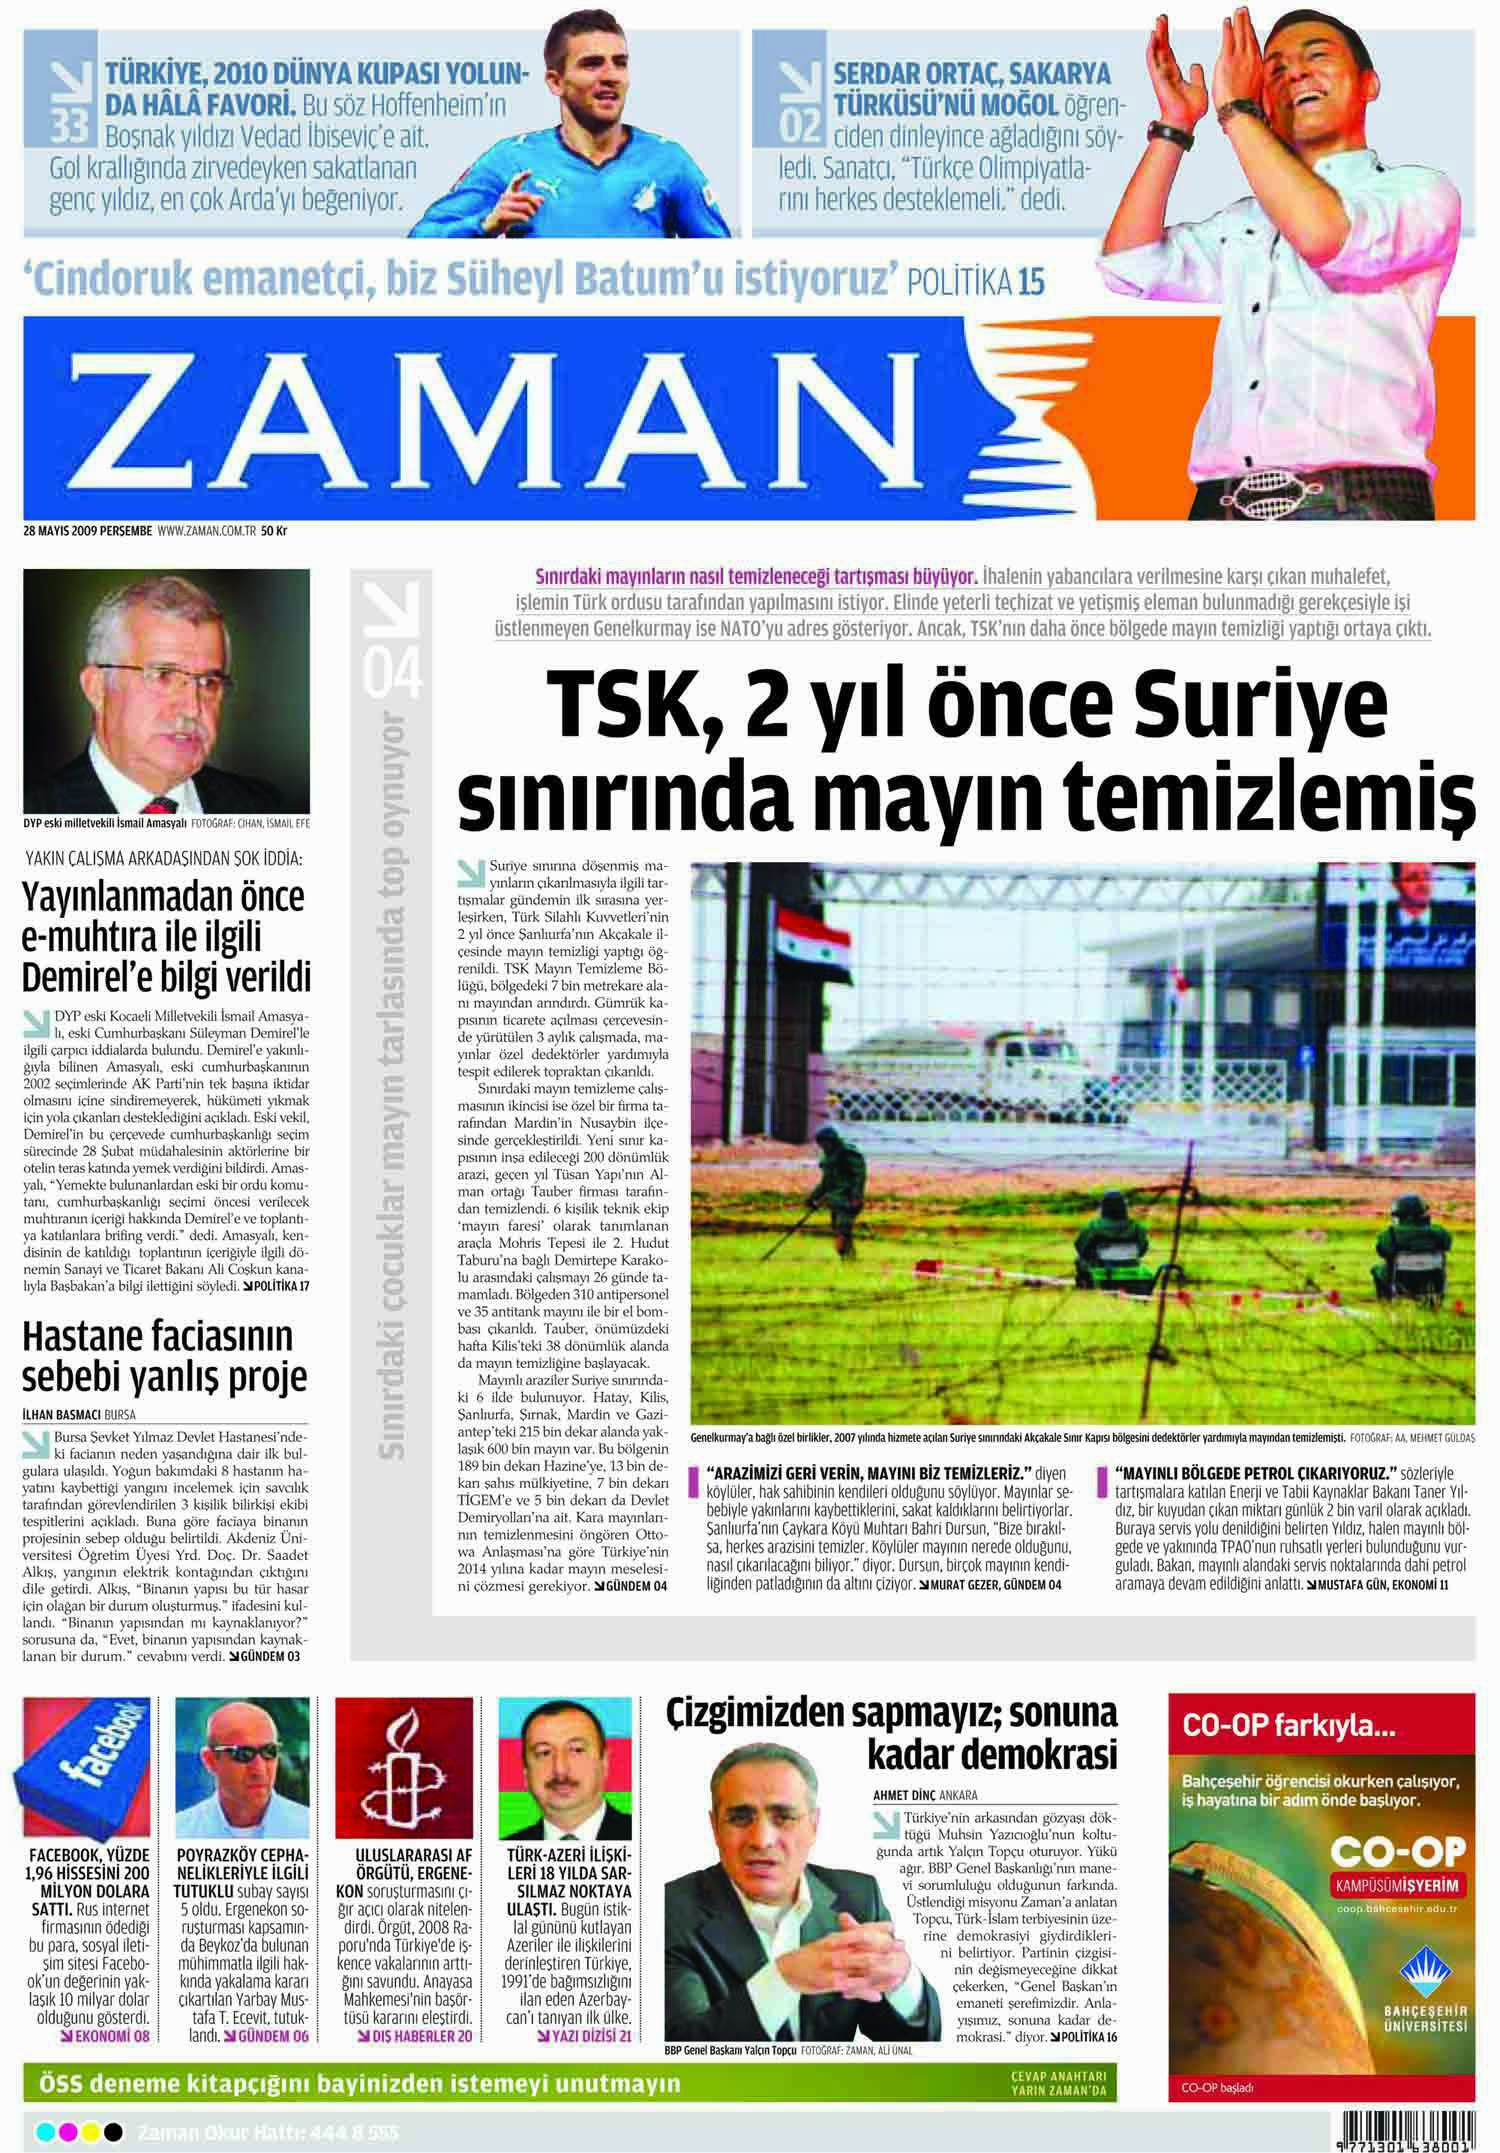 Στην τουρκική εφημερίδα "Zaman"…